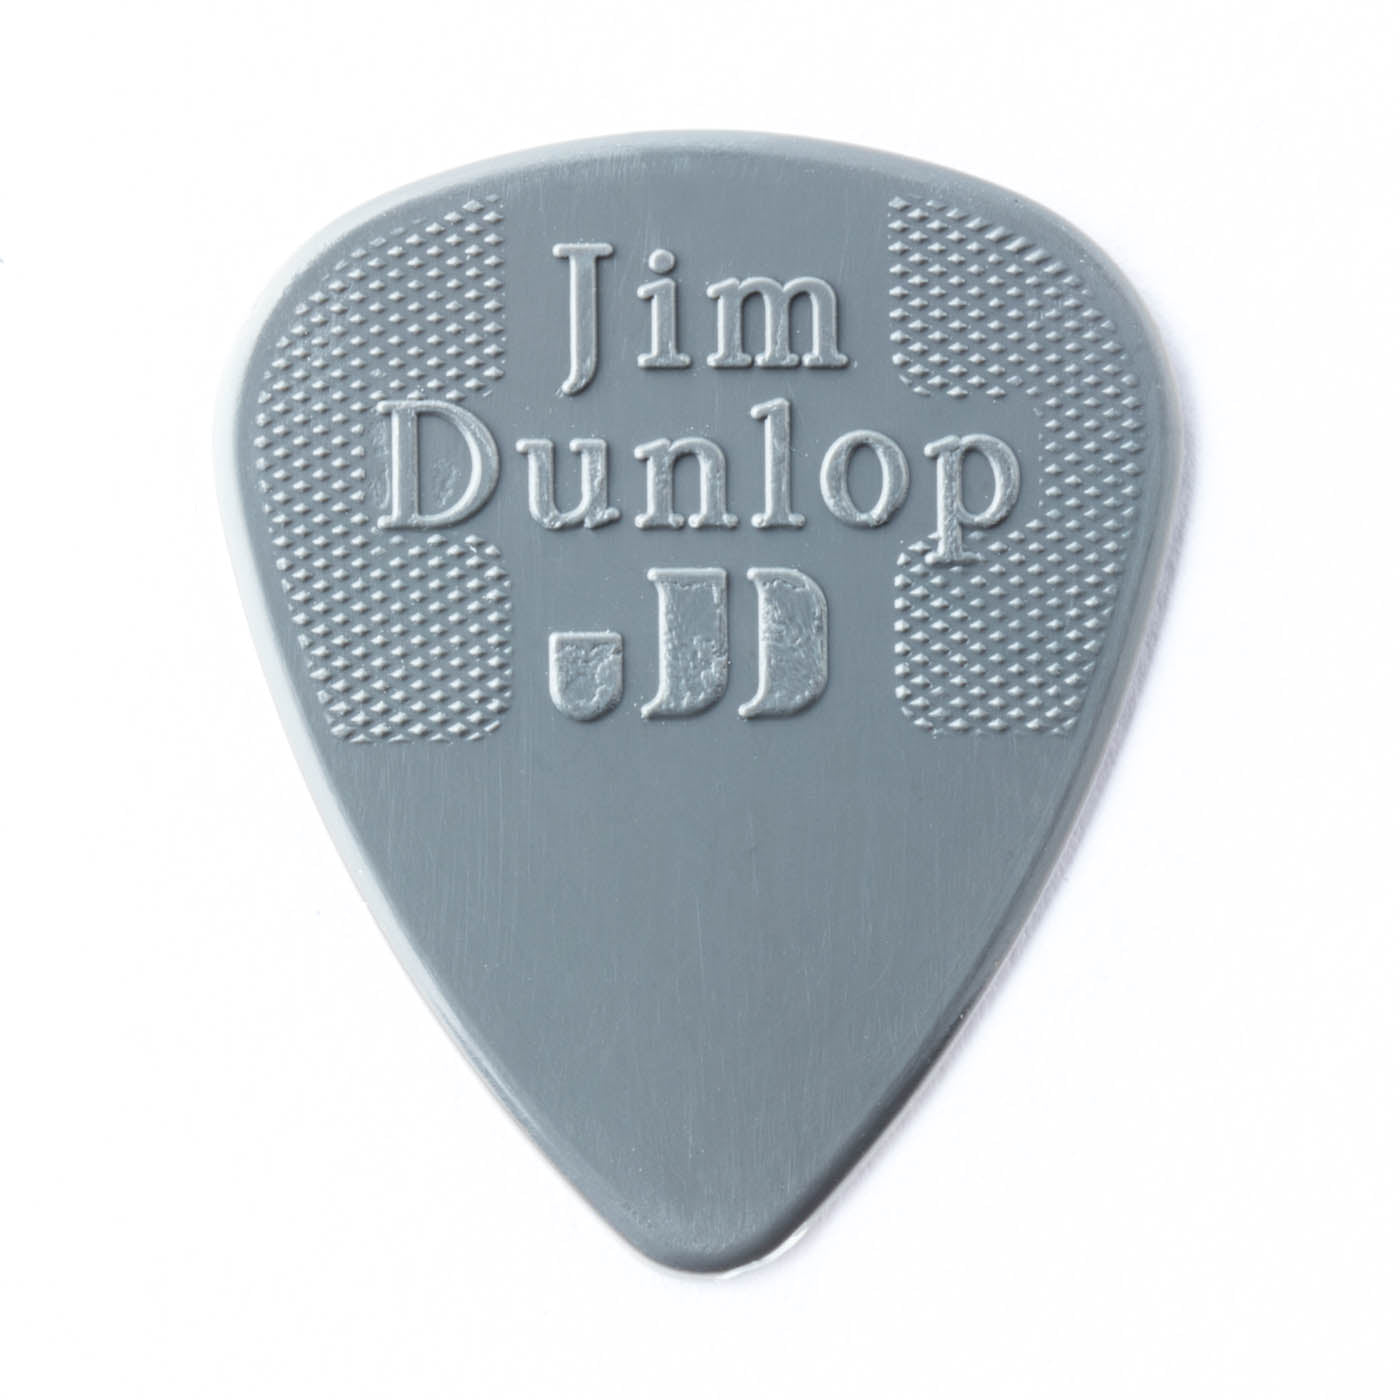 Jim Dunlop Nylon Standard Guitar Picks 0.73mm Bulk Pack of 72 picks